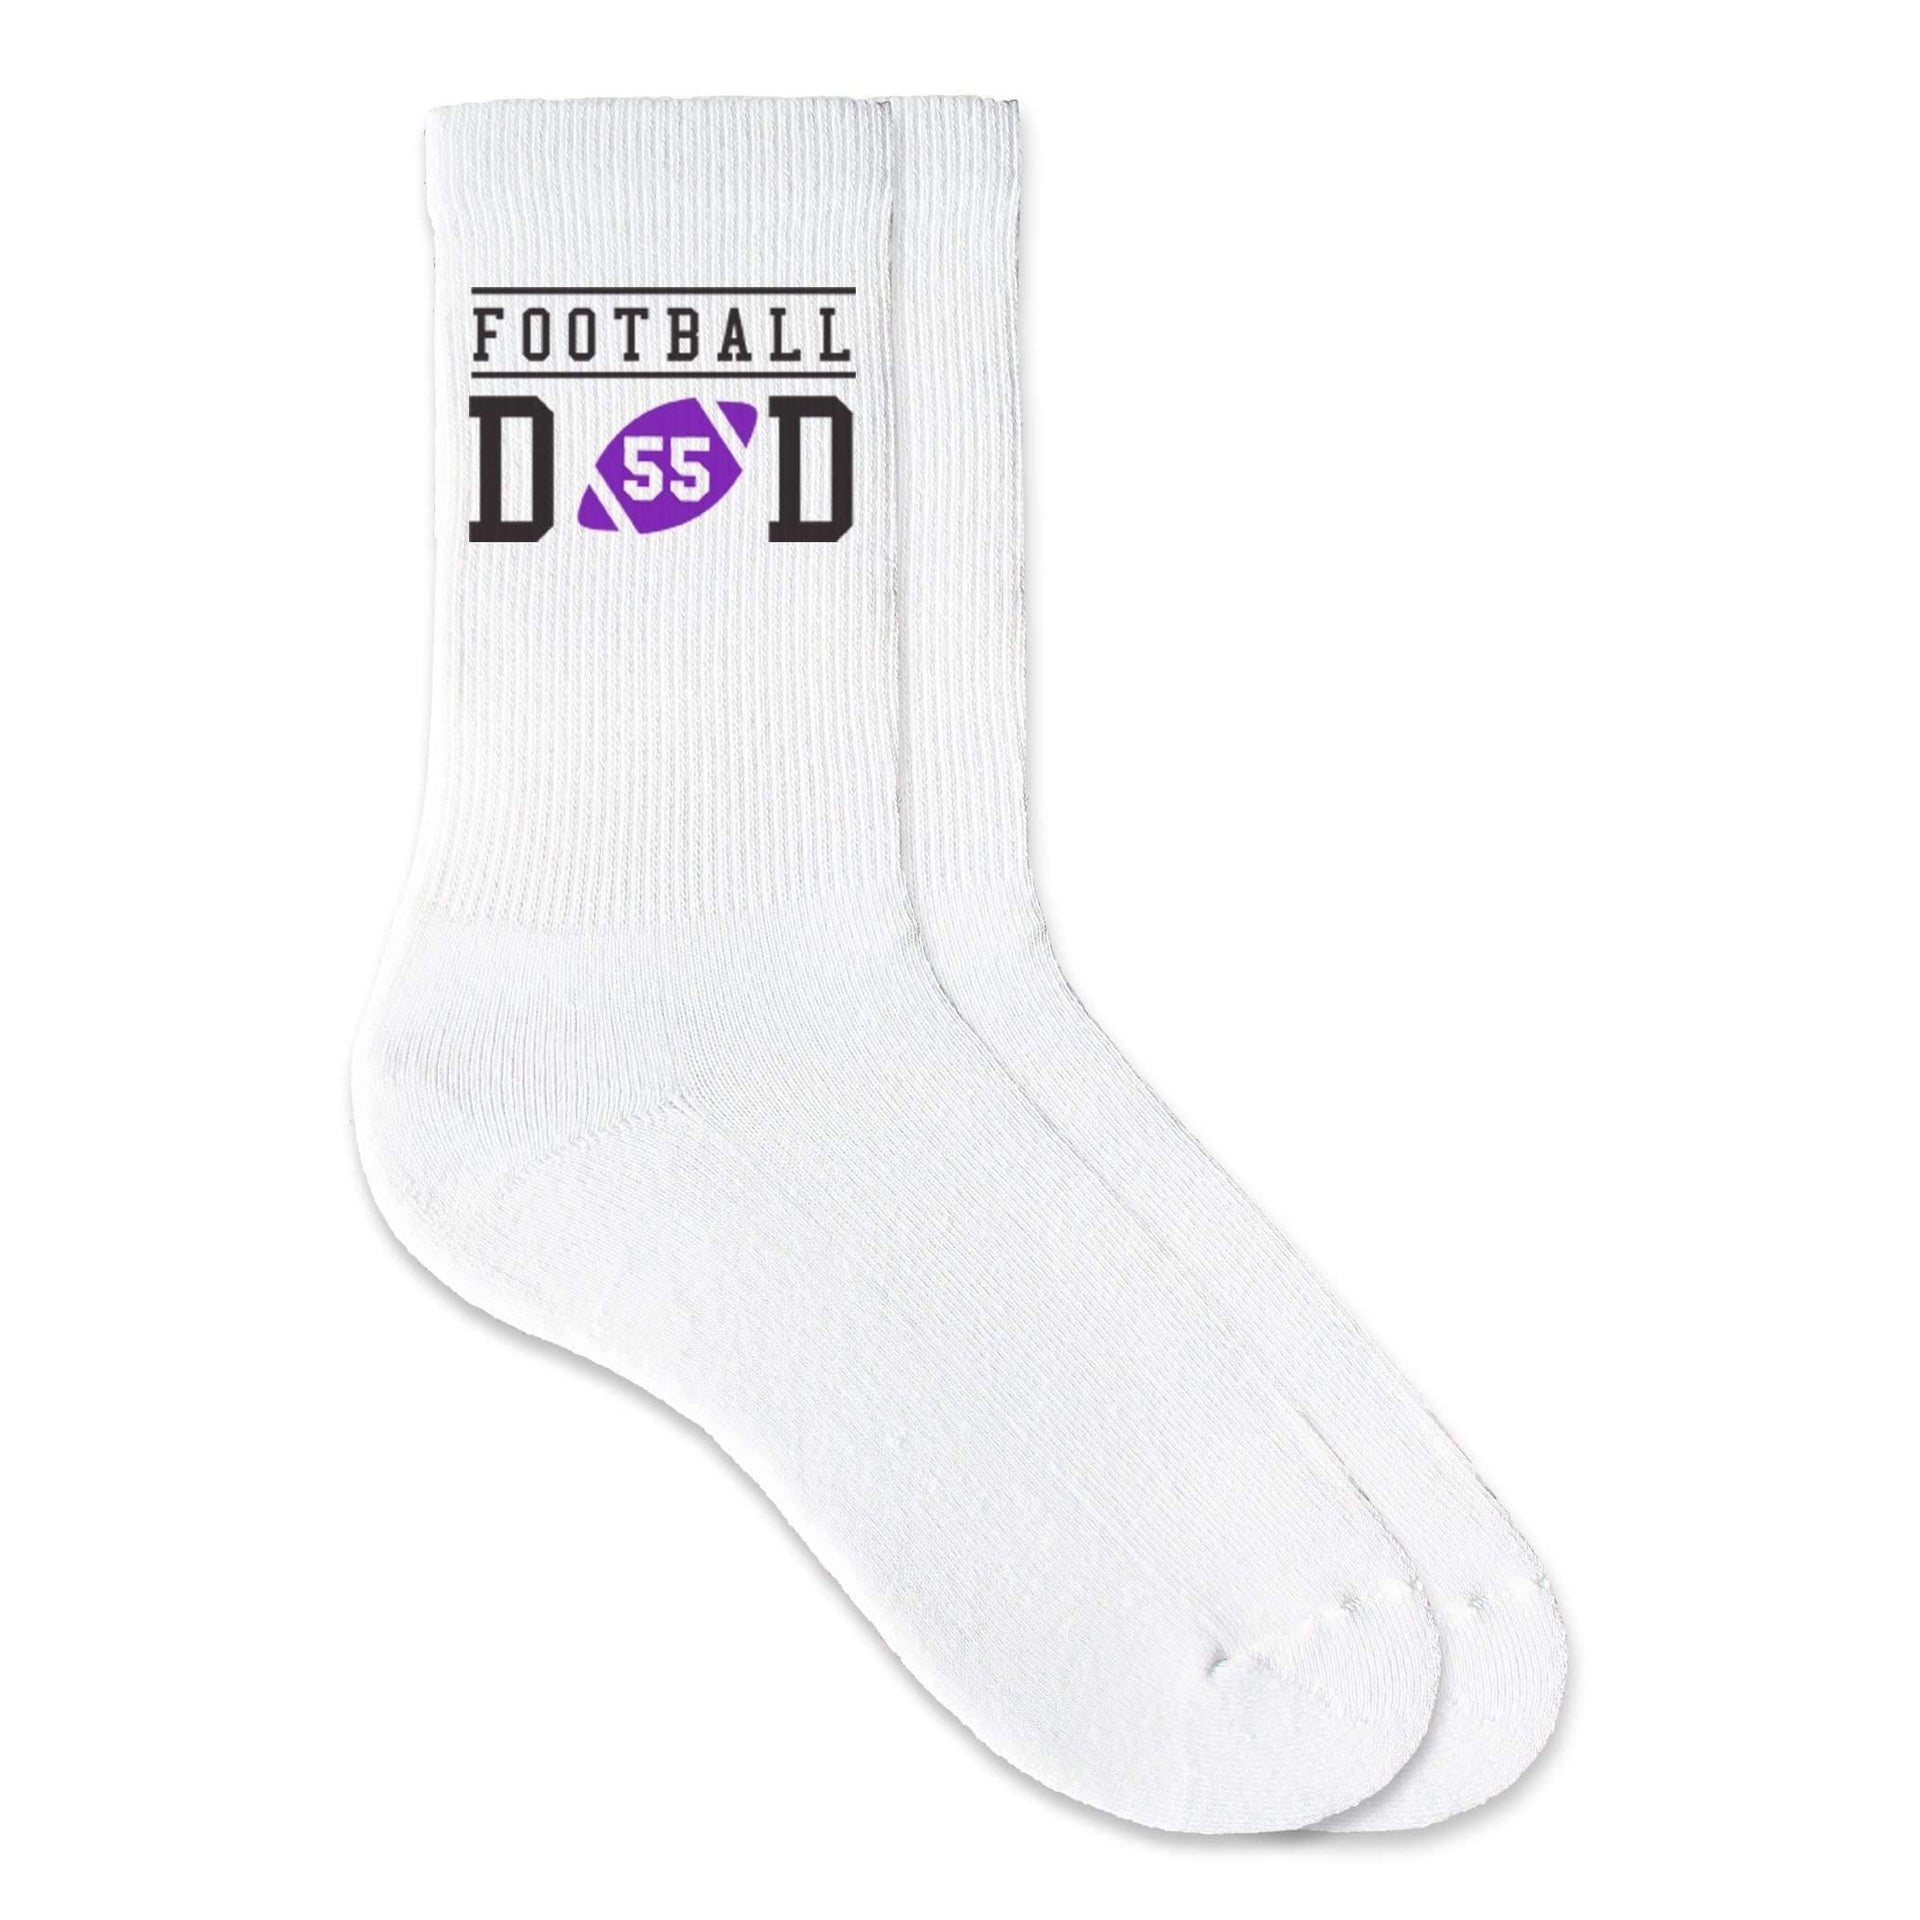 Football Dad custom printed on crew socks.